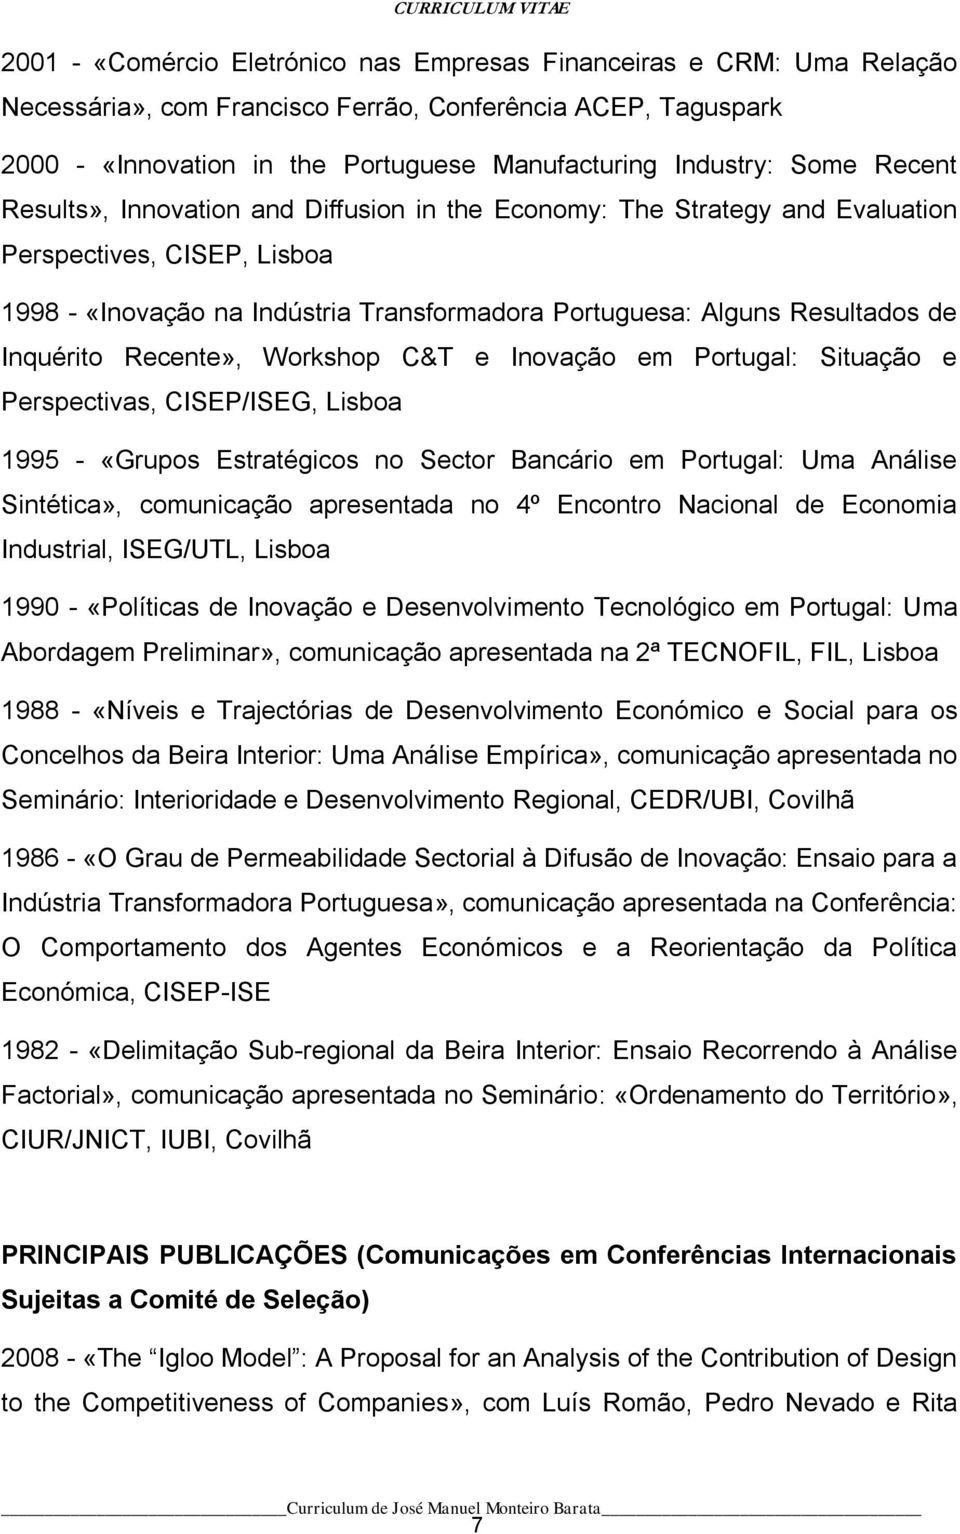 Inquérito Recente», Workshop C&T e Inovação em Portugal: Situação e Perspectivas, CISEP/ISEG, Lisboa 1995 - «Grupos Estratégicos no Sector Bancário em Portugal: Uma Análise Sintética», comunicação